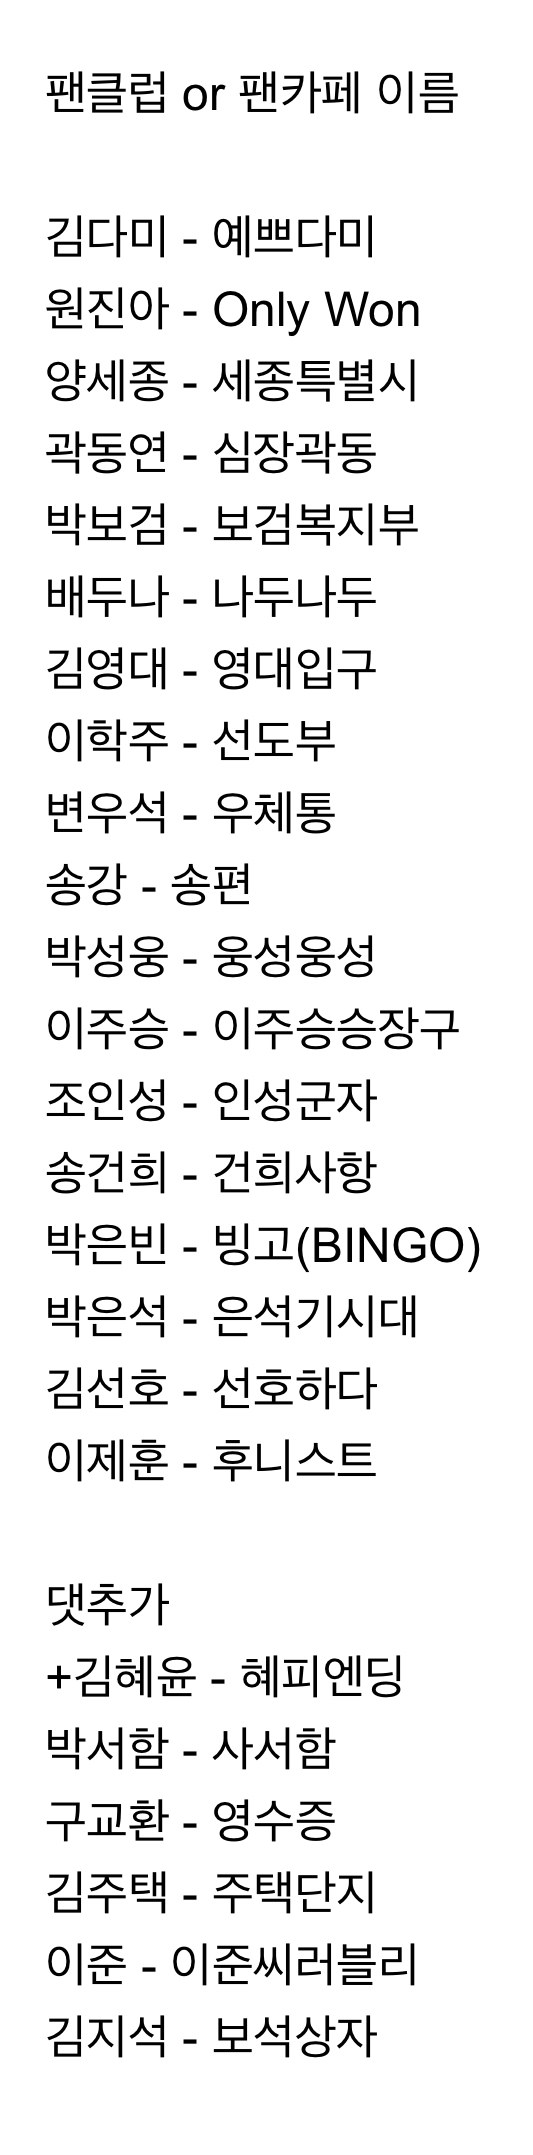 [정리글] 아이돌에 비해 직관적인 이름이 많은 배우 팬클럽 이름 | 인스티즈